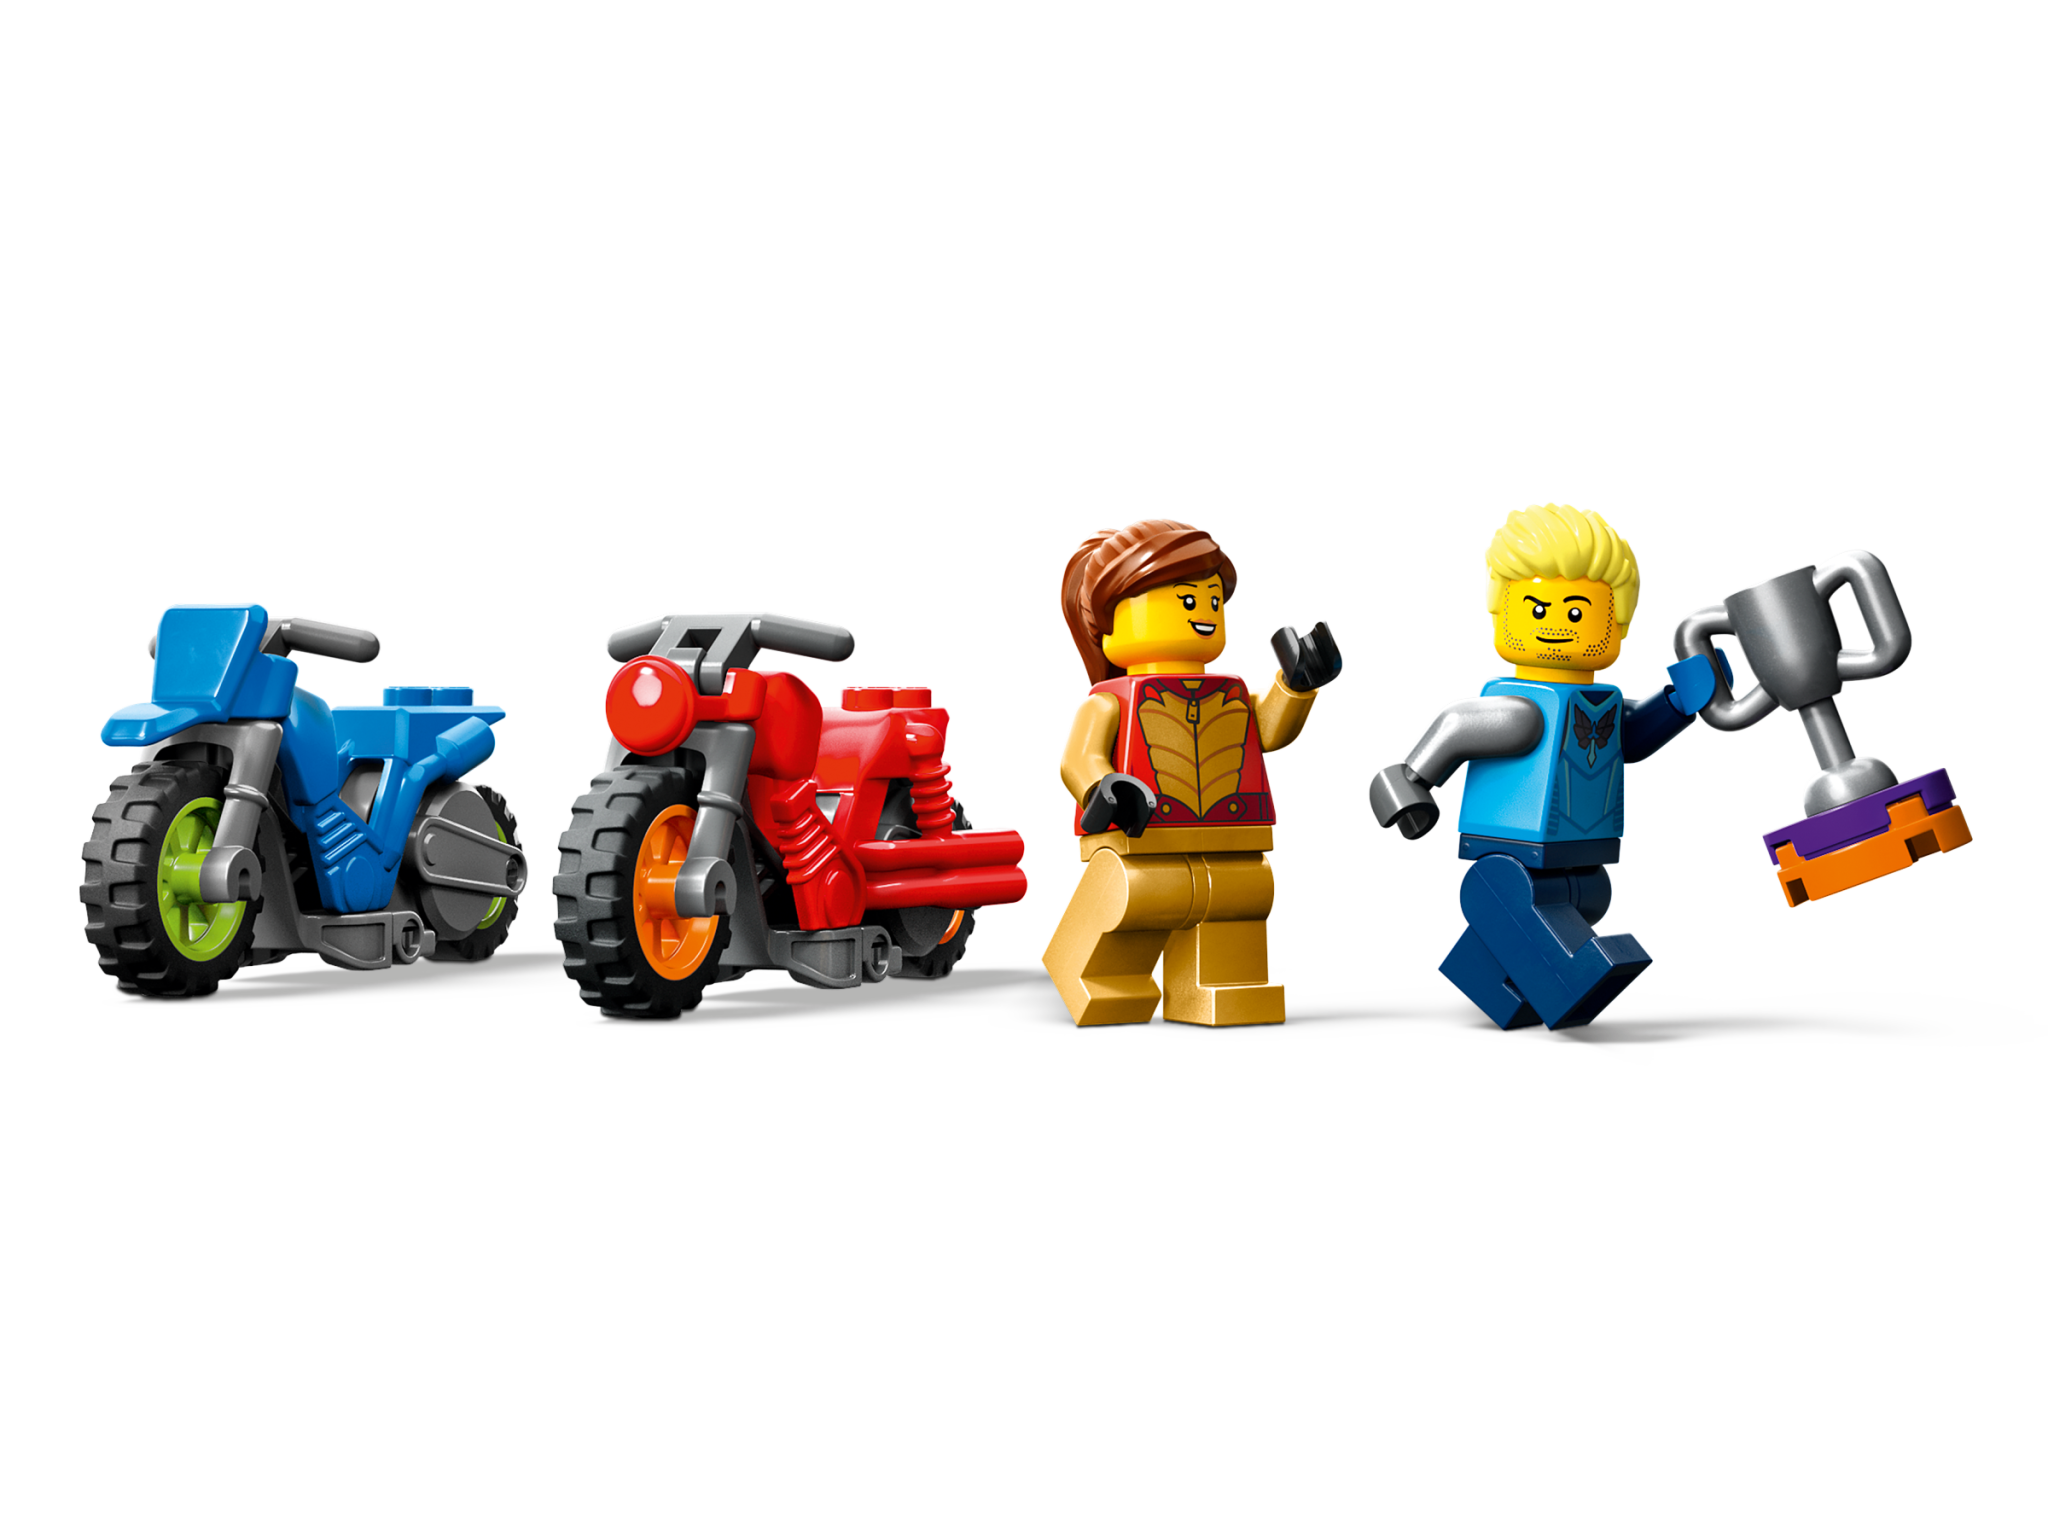 Lego Lego 60360 City - Le défi de cascades tournoyantes